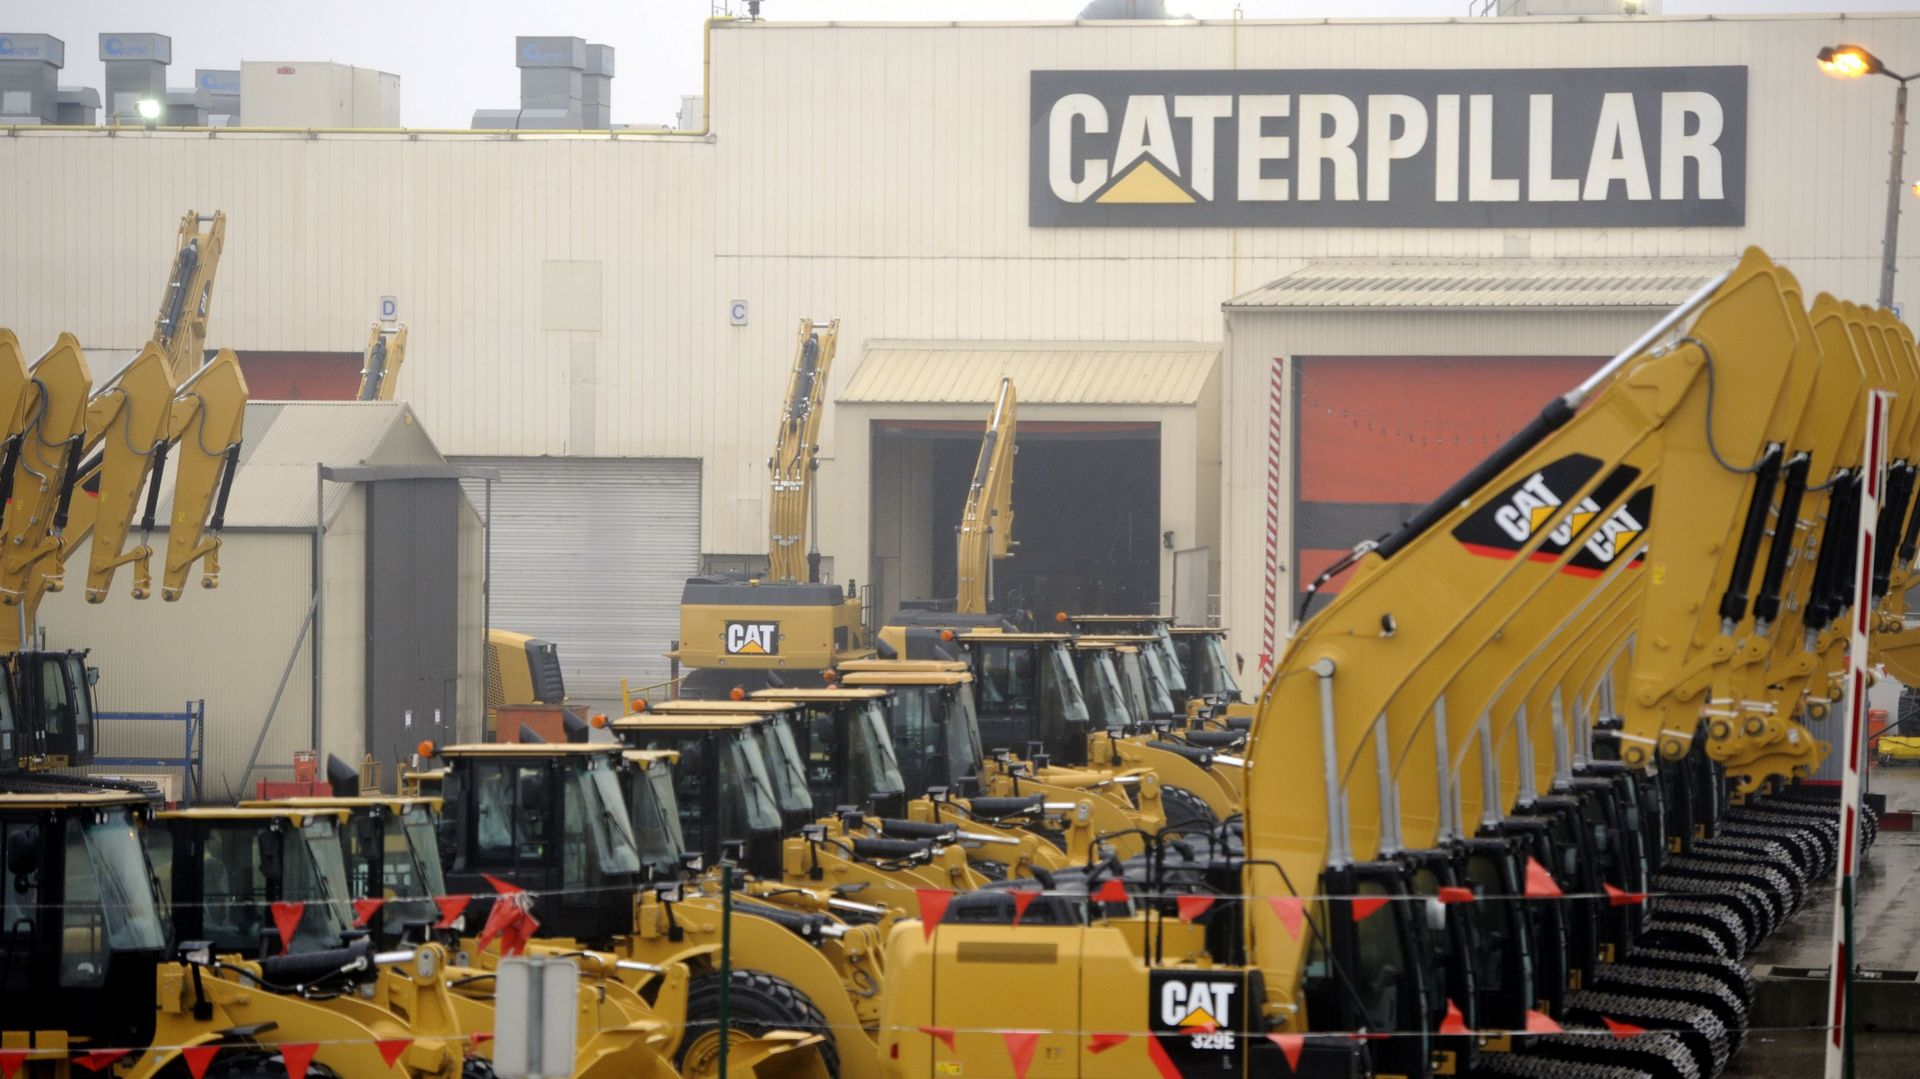 1400 emplois perdus chez Caterpillar, quelles conséquences? Chat à 12h